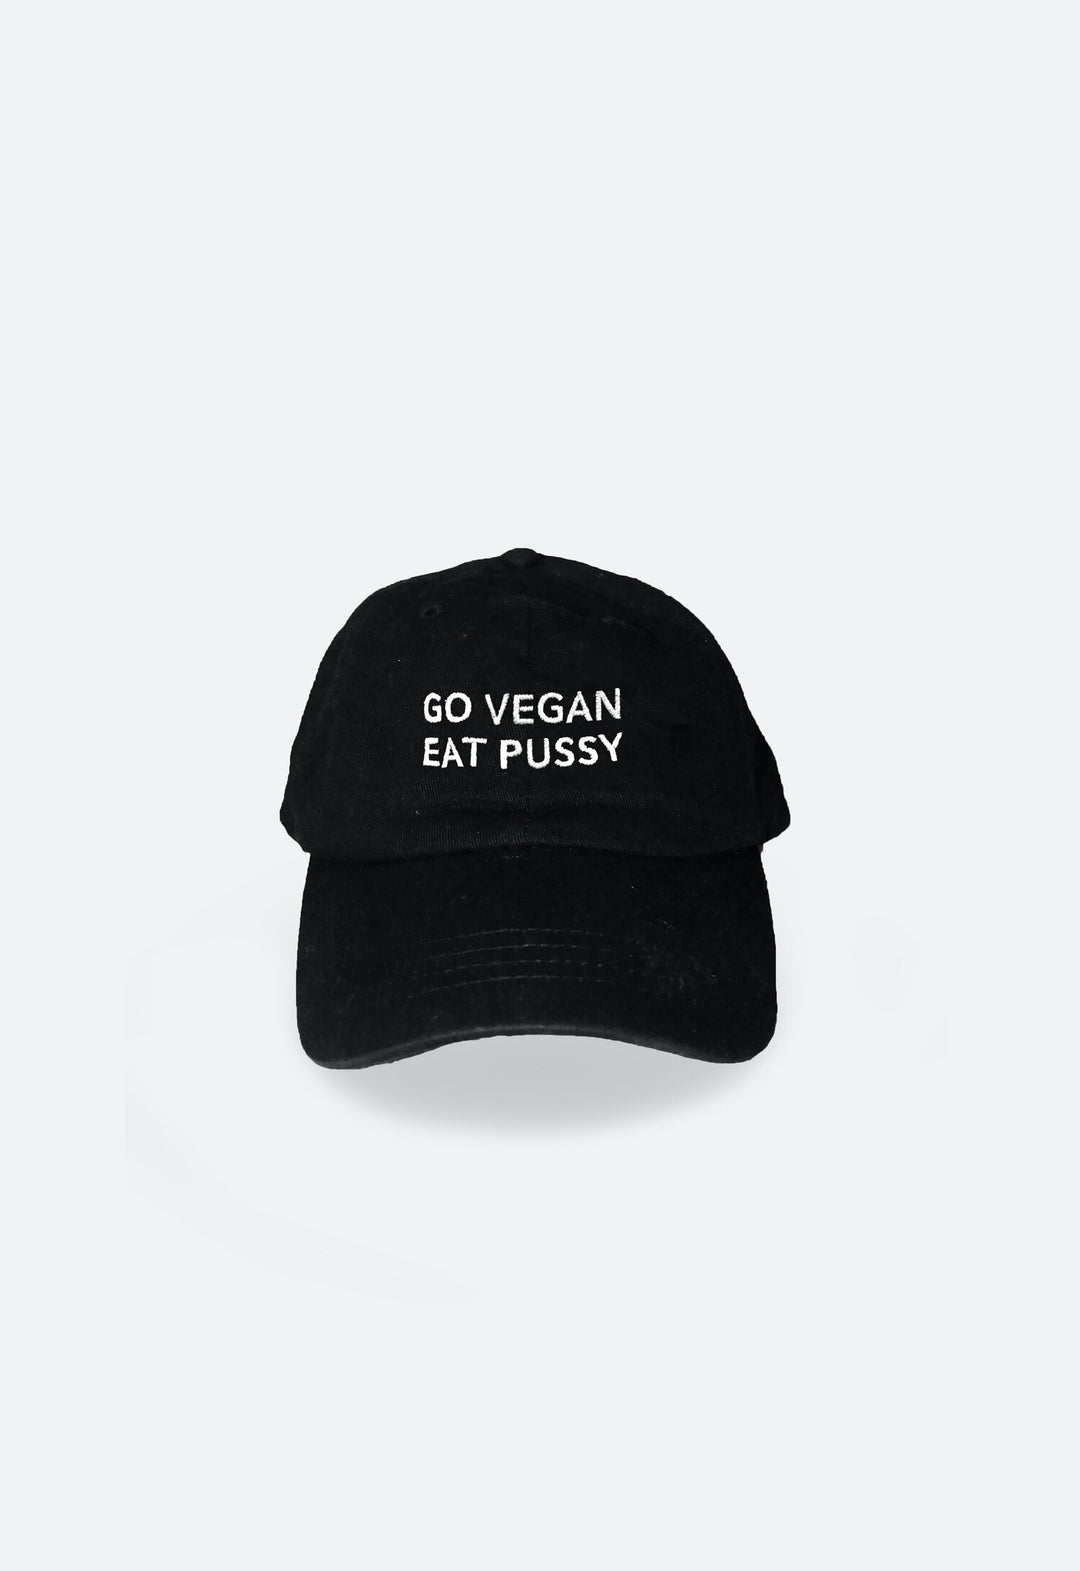 Cap "go vegan eat pussy" - black